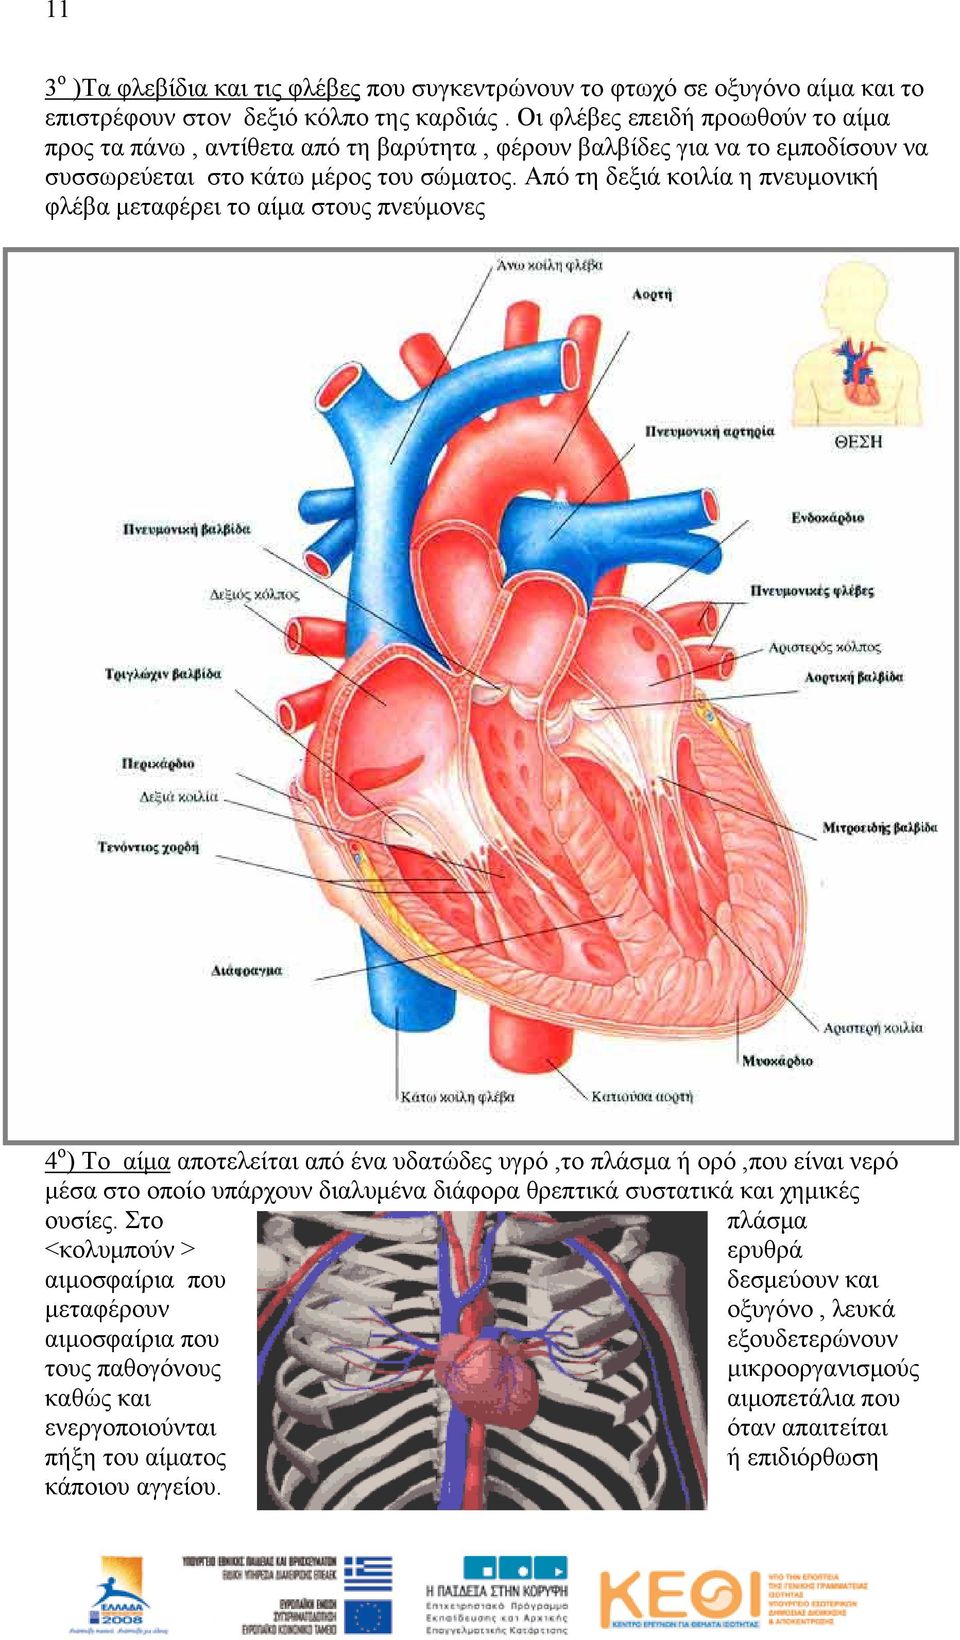 Από τη δεξιά κοιλία η πνευμονική φλέβα μεταφέρει το αίμα στους πνεύμονες 4 ο ) Το αίμα αποτελείται από ένα υδατώδες υγρό,το πλάσμα ή ορό,που είναι νερό μέσα στο οποίο υπάρχουν διαλυμένα